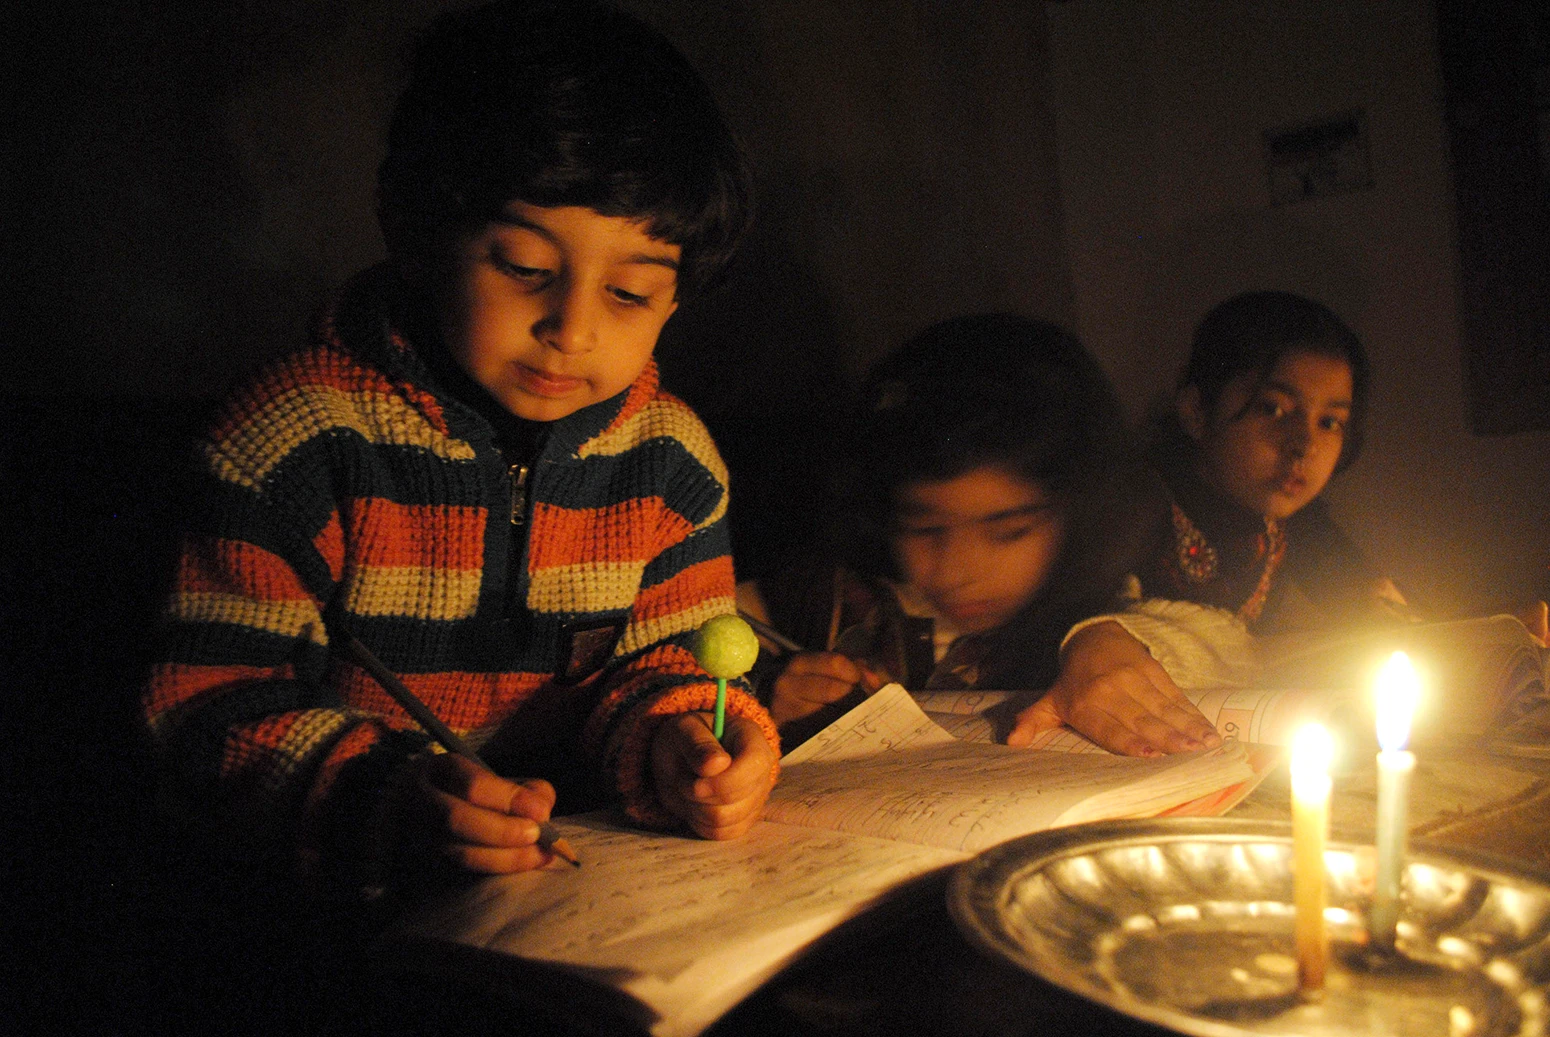 Børn studerer i levende lys under et strømafbrydelse i det nordvestlige Pakistans Peshawar, januar 2015.